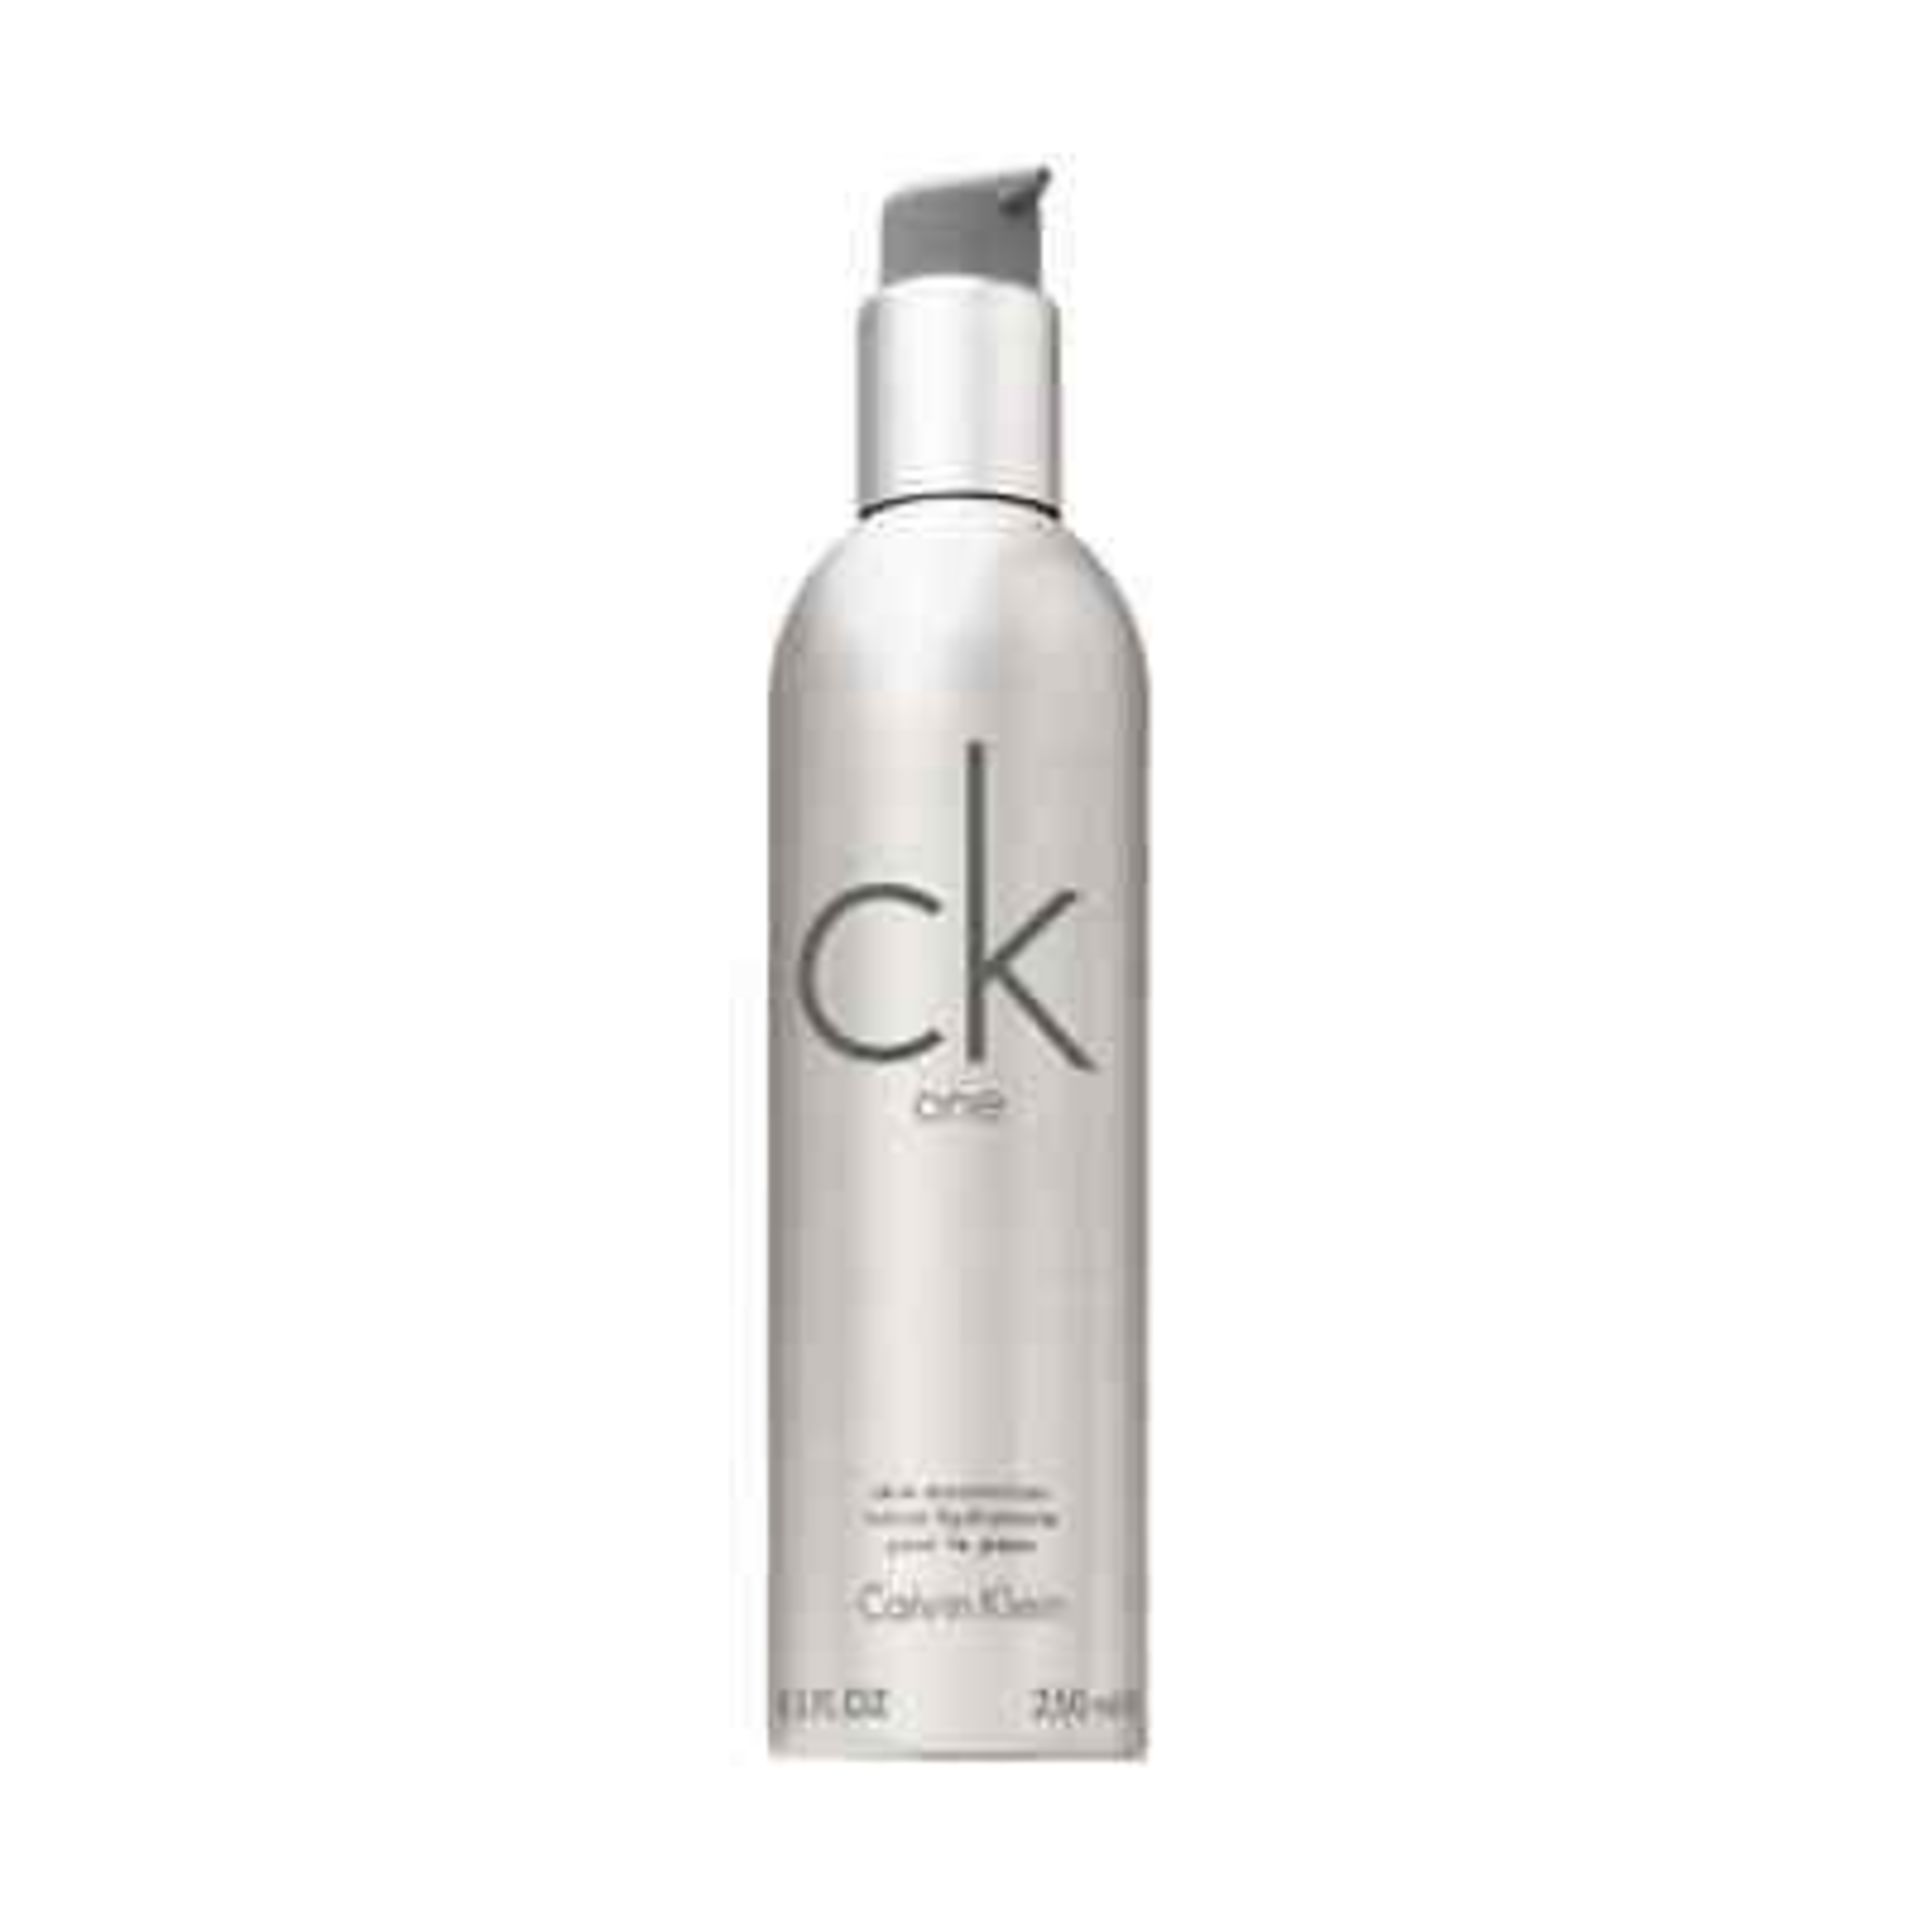 + VAT Brand New CK One 250ml Skin moisturiser Lotion